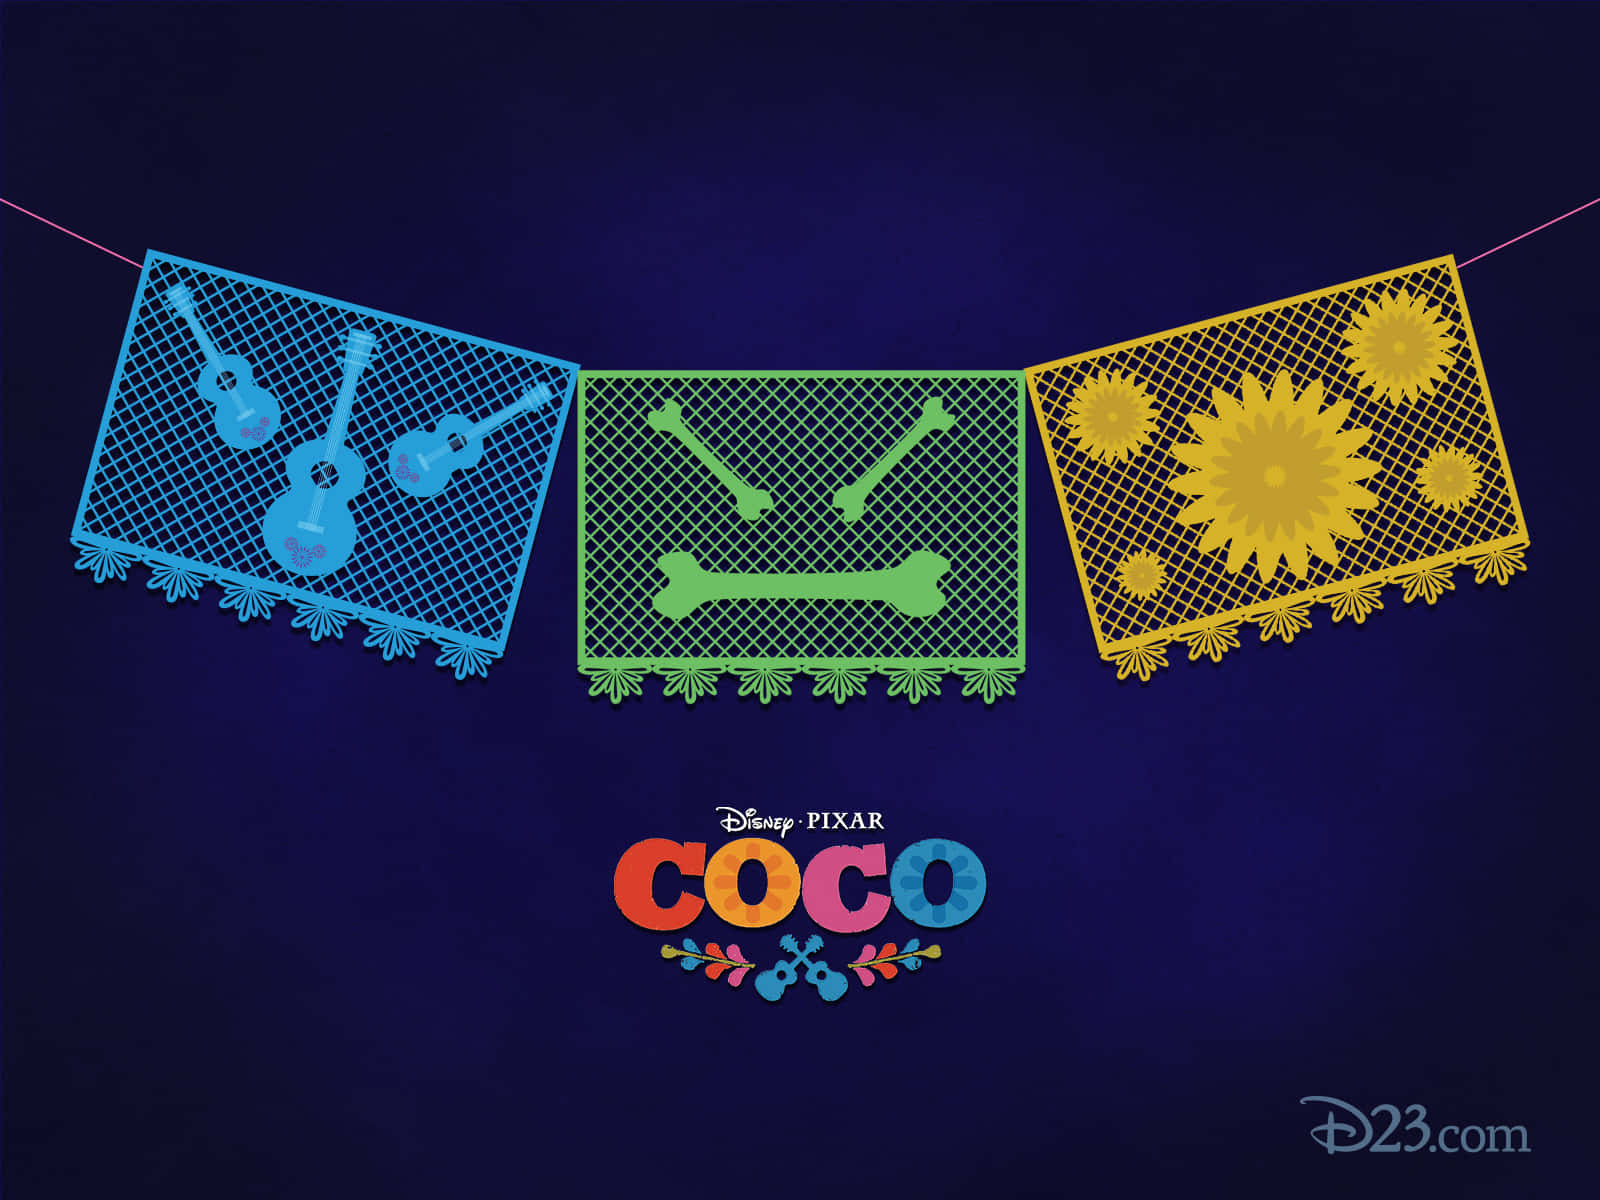 Descubrao Mundo De Coco, Uma Aventura Mágica Da Disney-pixar. Papel de Parede